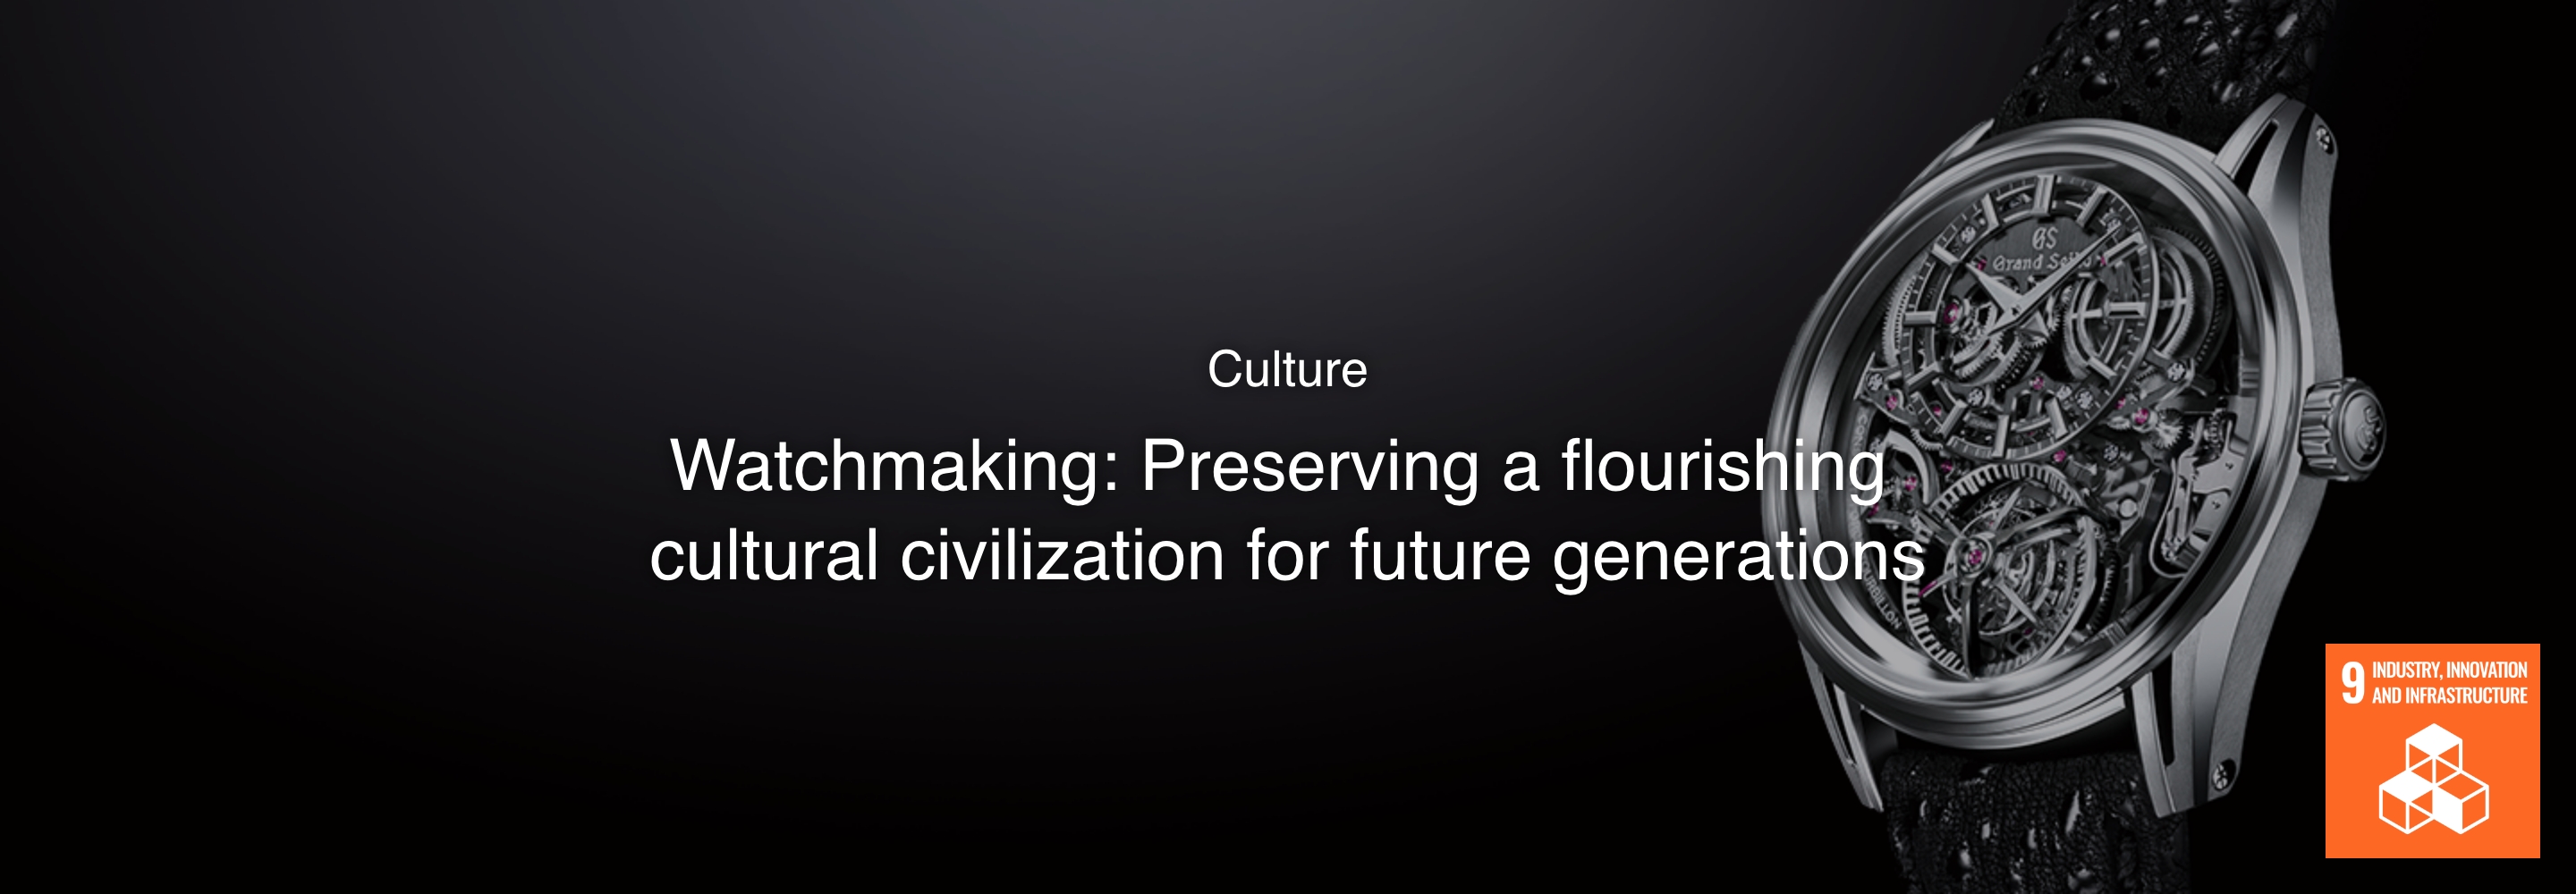 Cultura Relojería: Preservando una civilización cultural floreciente para las futuras generaciones